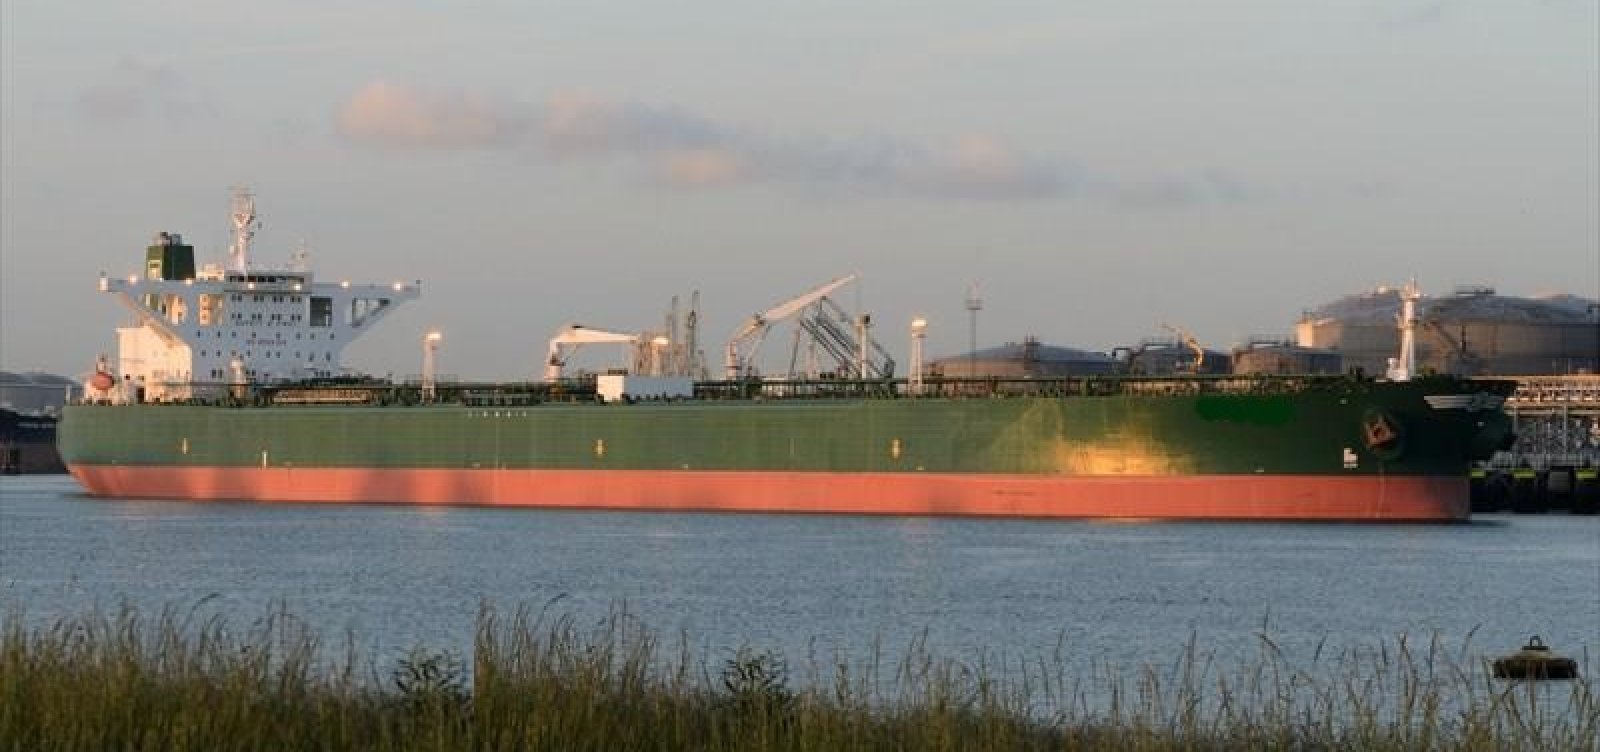 Navio identificado pela Ufal não foi responsável por óleo na costa, diz Marinha